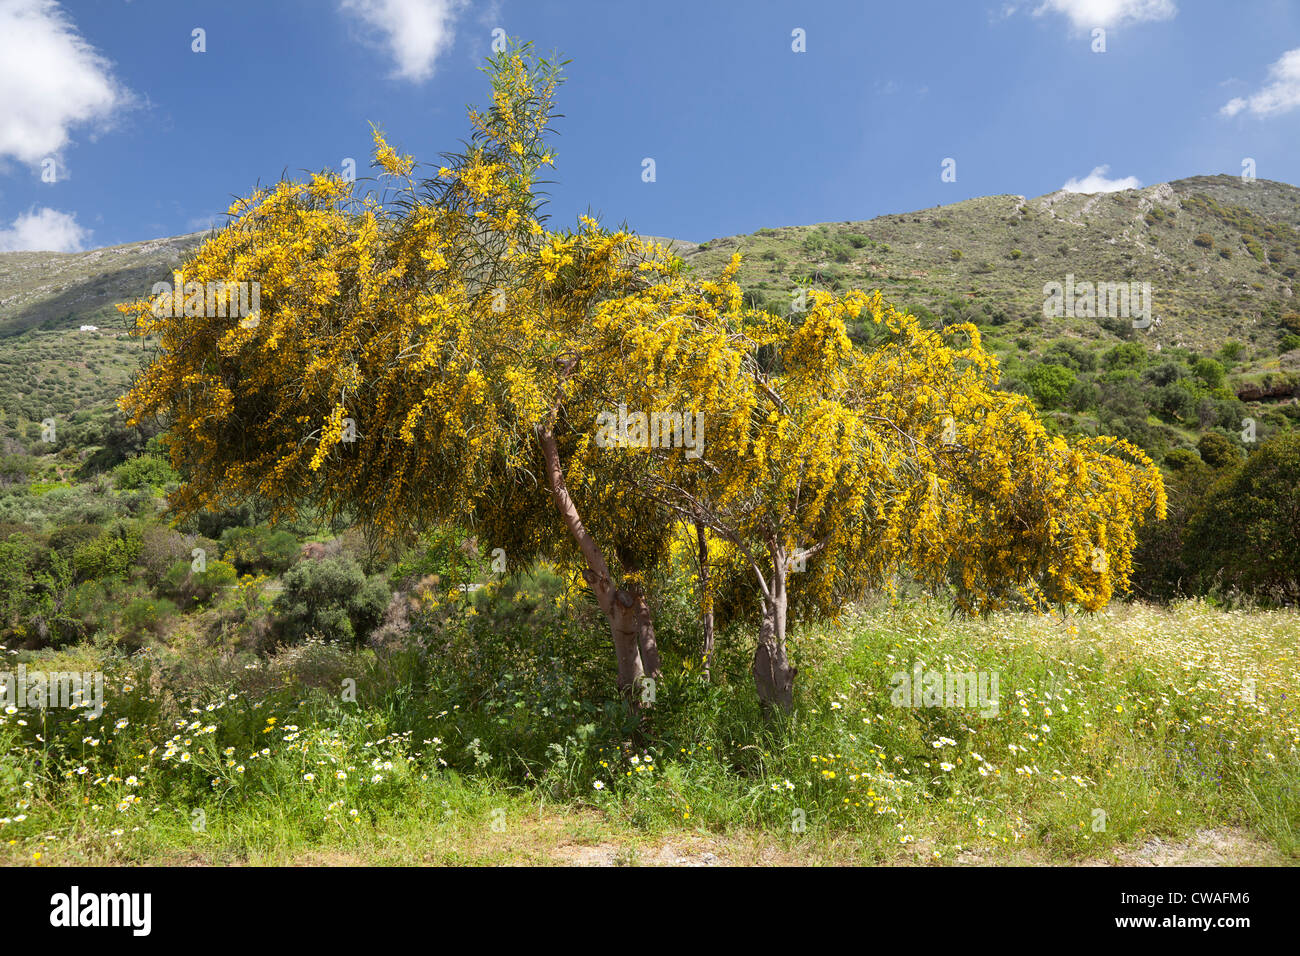 Bush à fleurs jaunes près de l'entrée de gorge de Richtis, Crète, Grèce Banque D'Images